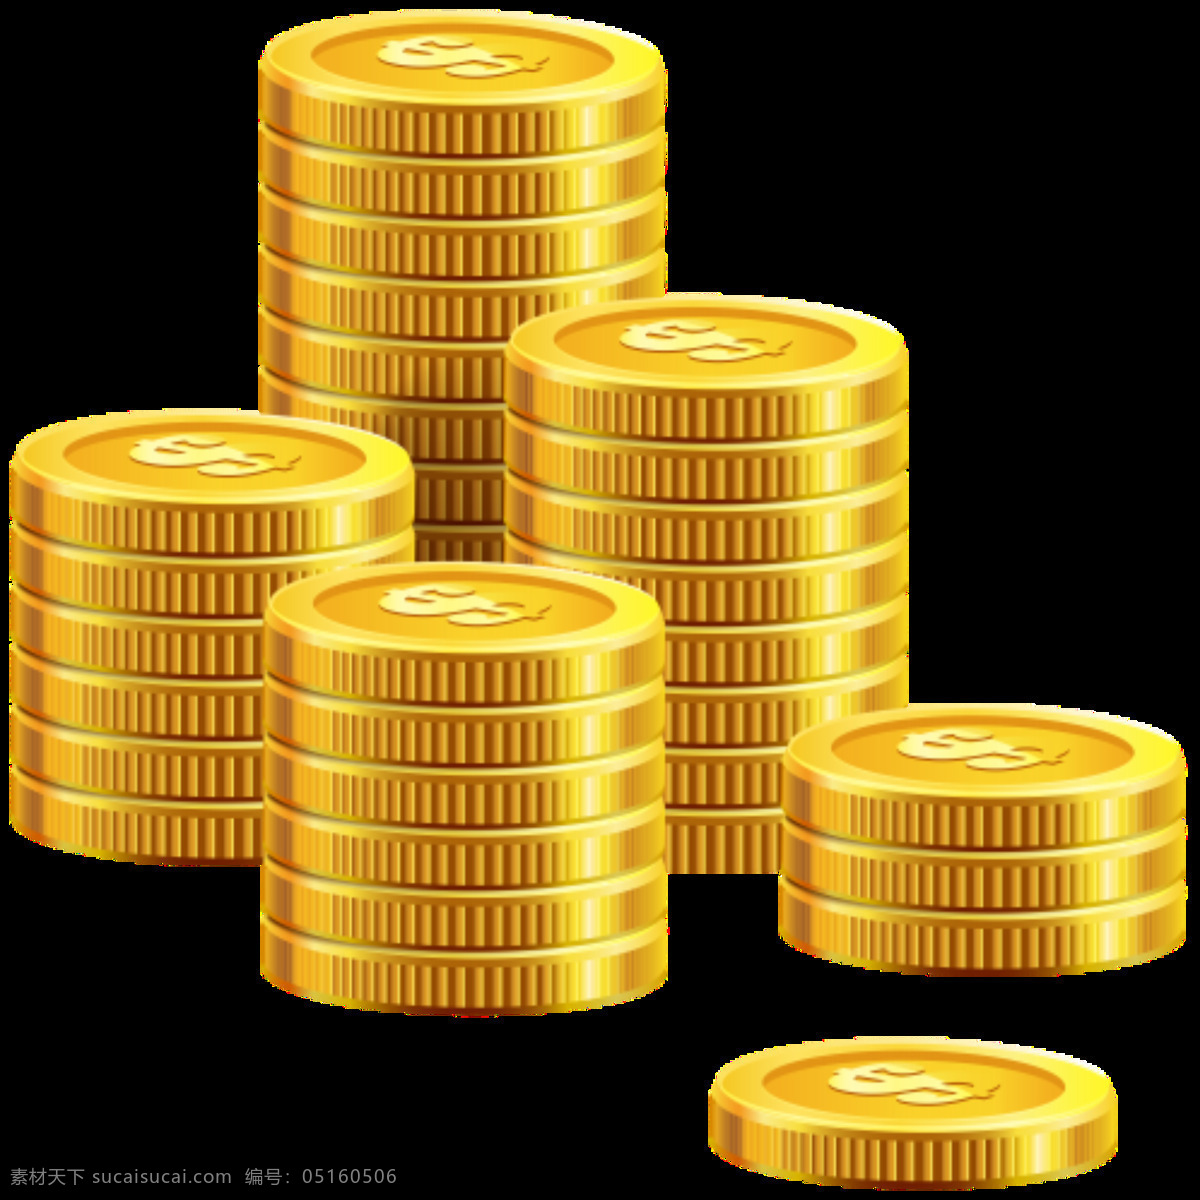 古代钱币 货币素材 金色 卡通金币 设计元素 高度 不一 的卡 通 金币 图案 元素